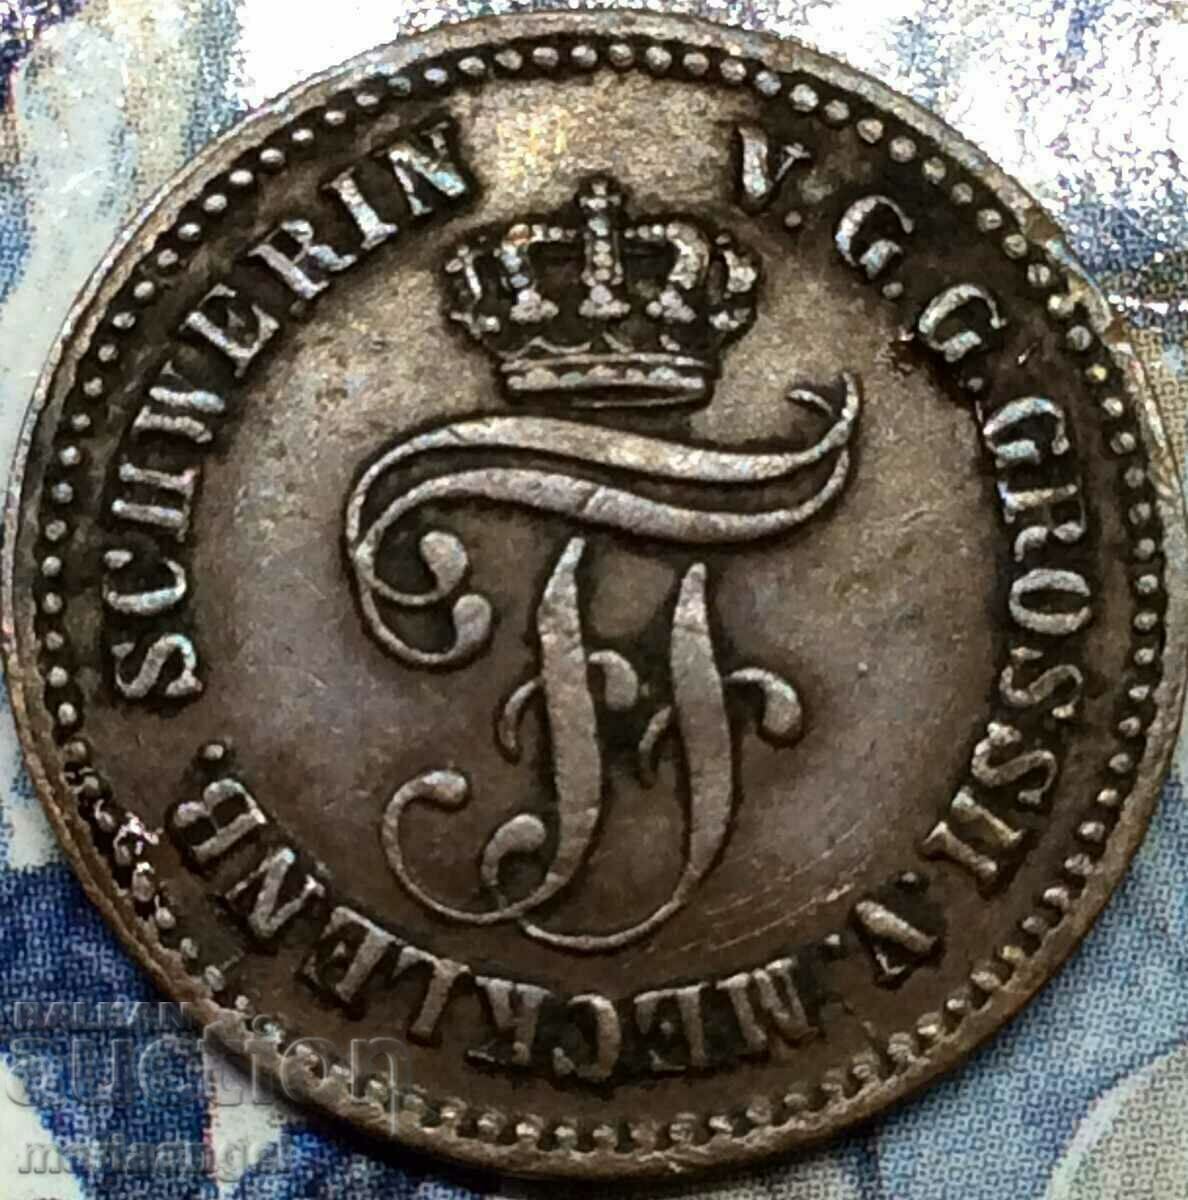 1 pfennig 1862 Mecklenburg-Schwerin Germany